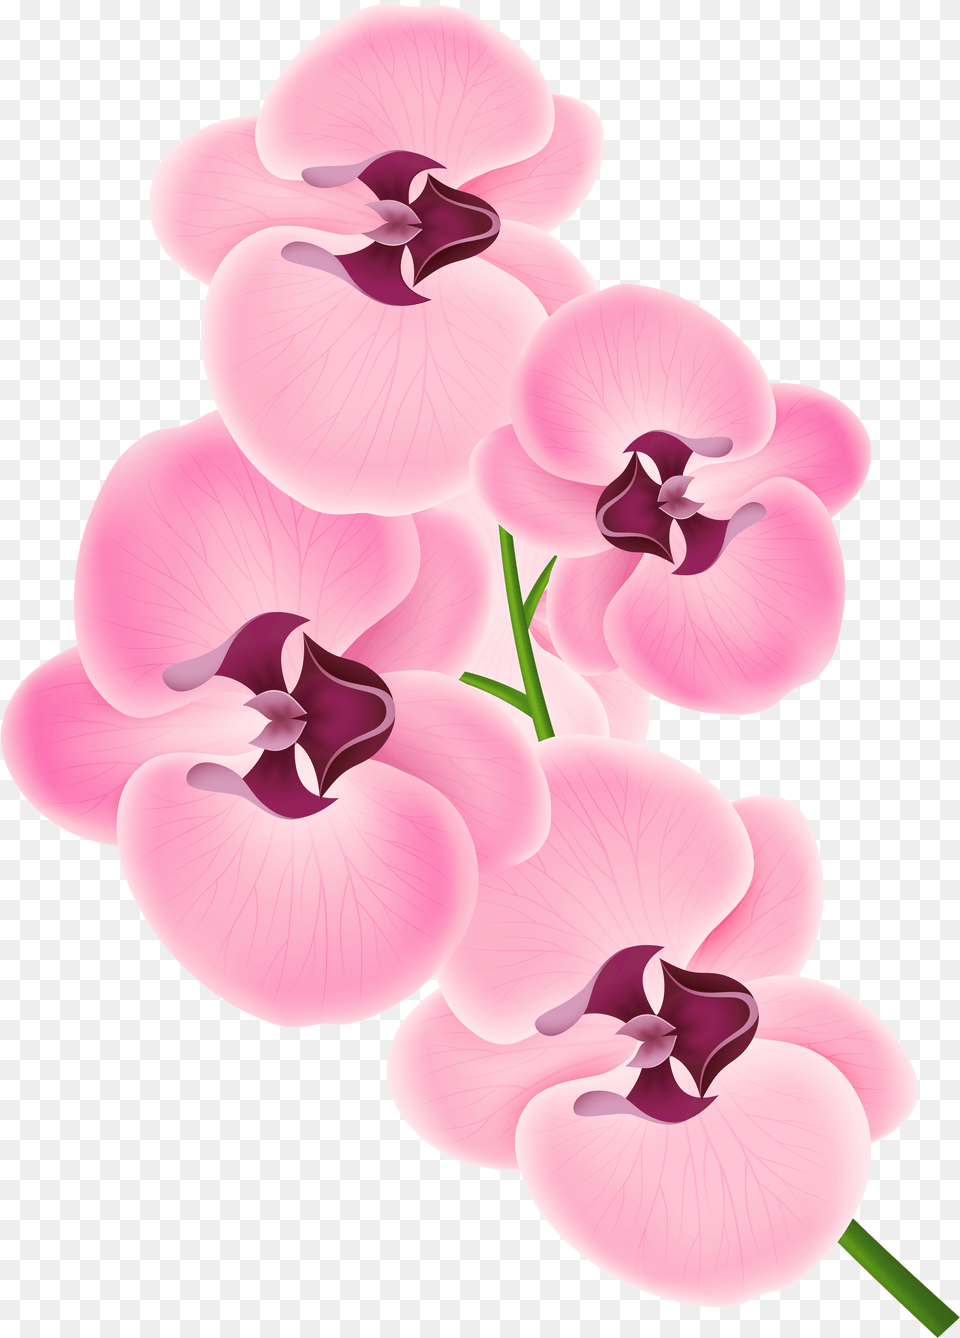 Pink Orchid Clipart Image Transparent Background Orchid Clipart, Flower, Plant, Petal, Geranium Png